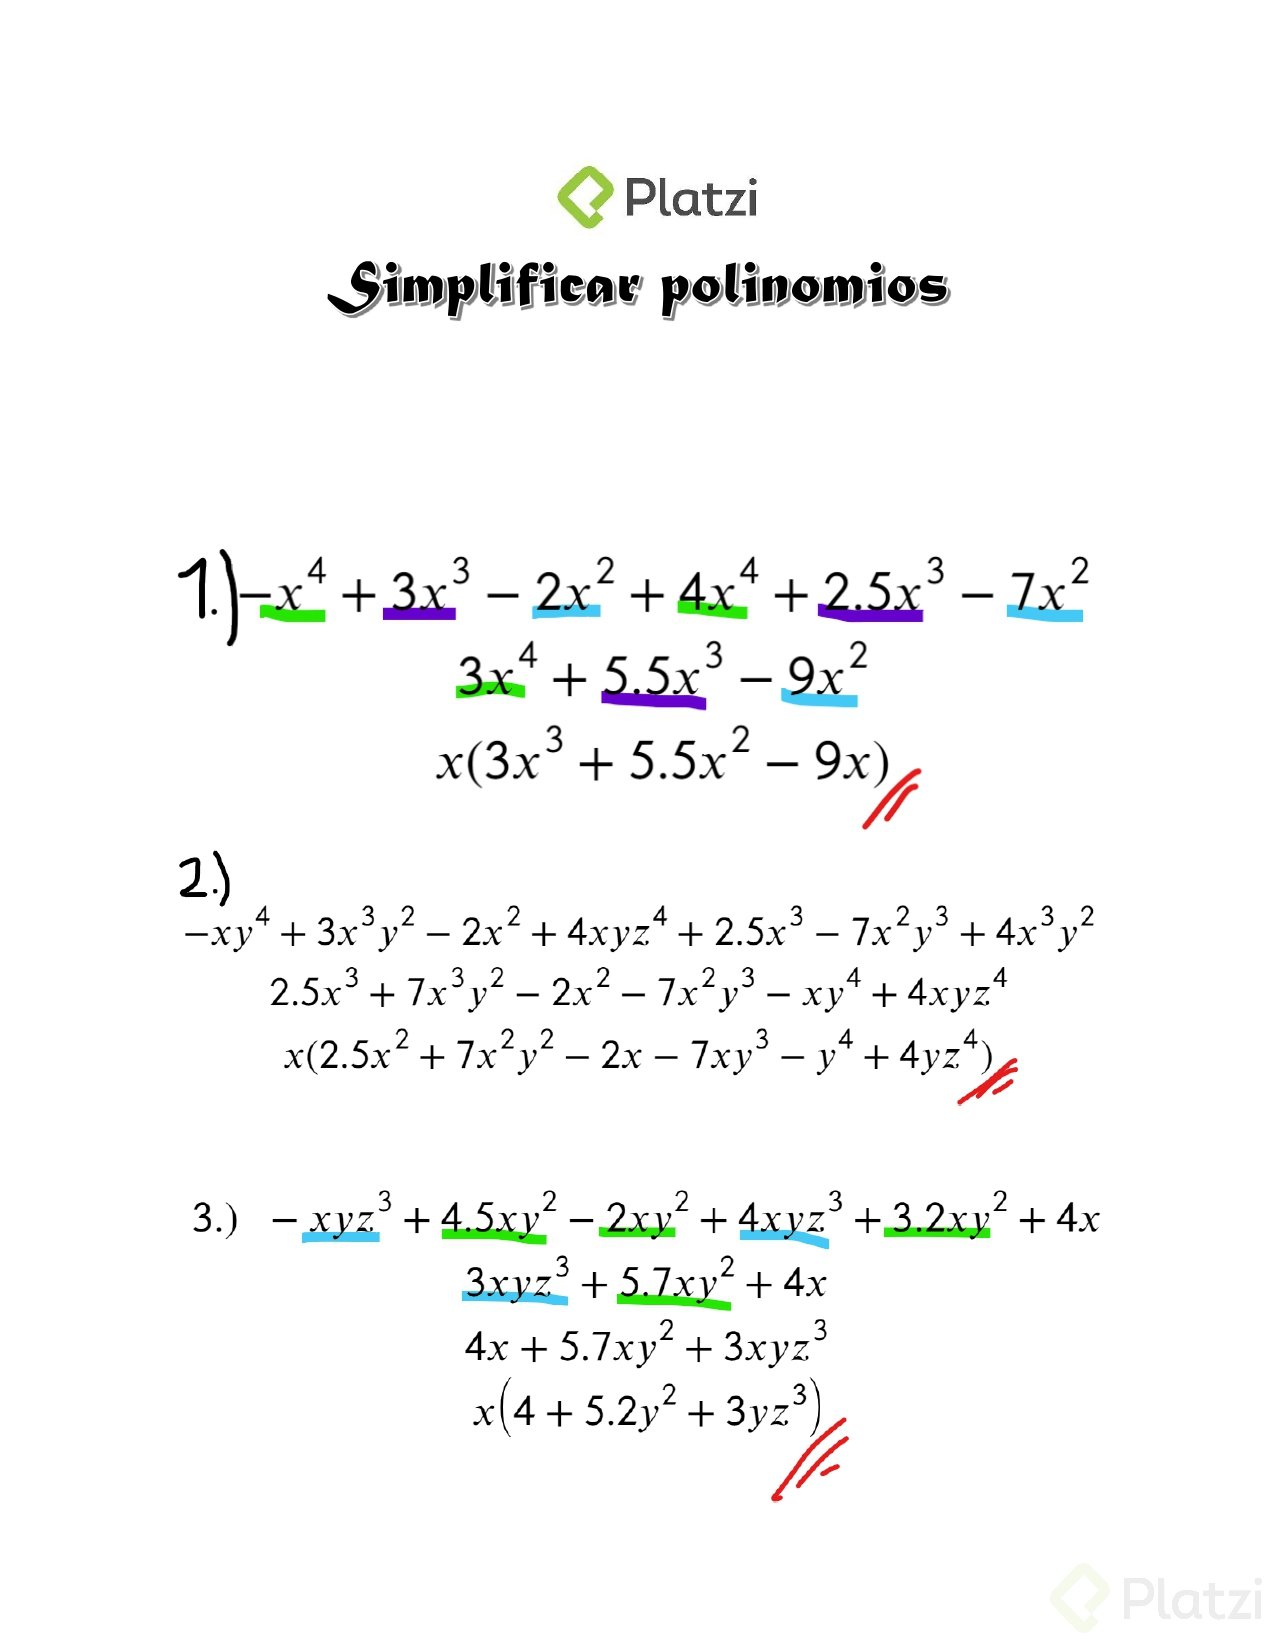 Simplificar polinomios solucion_page-0001.jpg